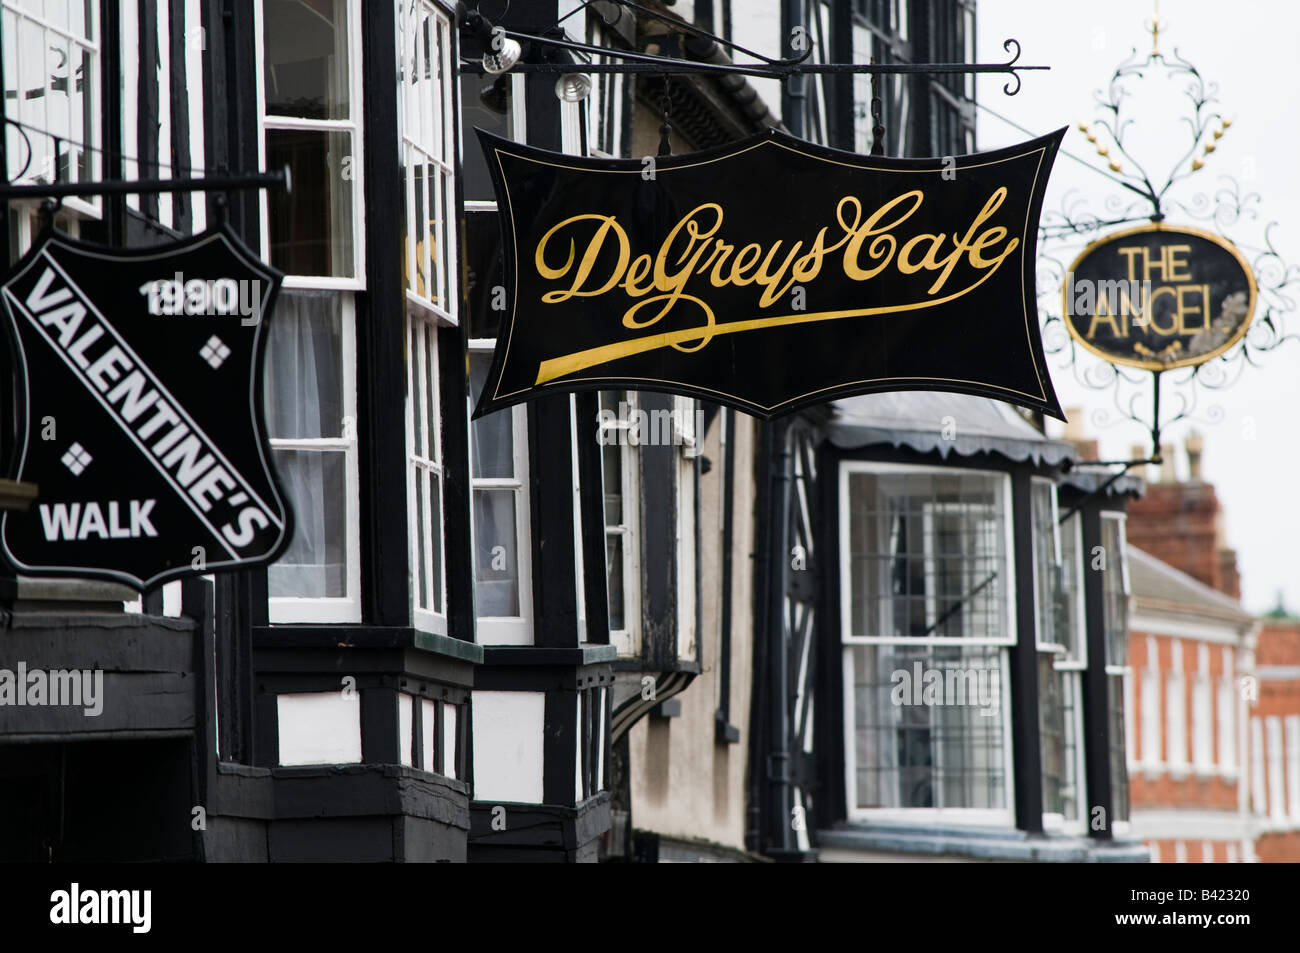 Signe pour DeGrays cafe et d'autres entreprises dans le centre-ville de Ludlow Shropshire England UK Banque D'Images